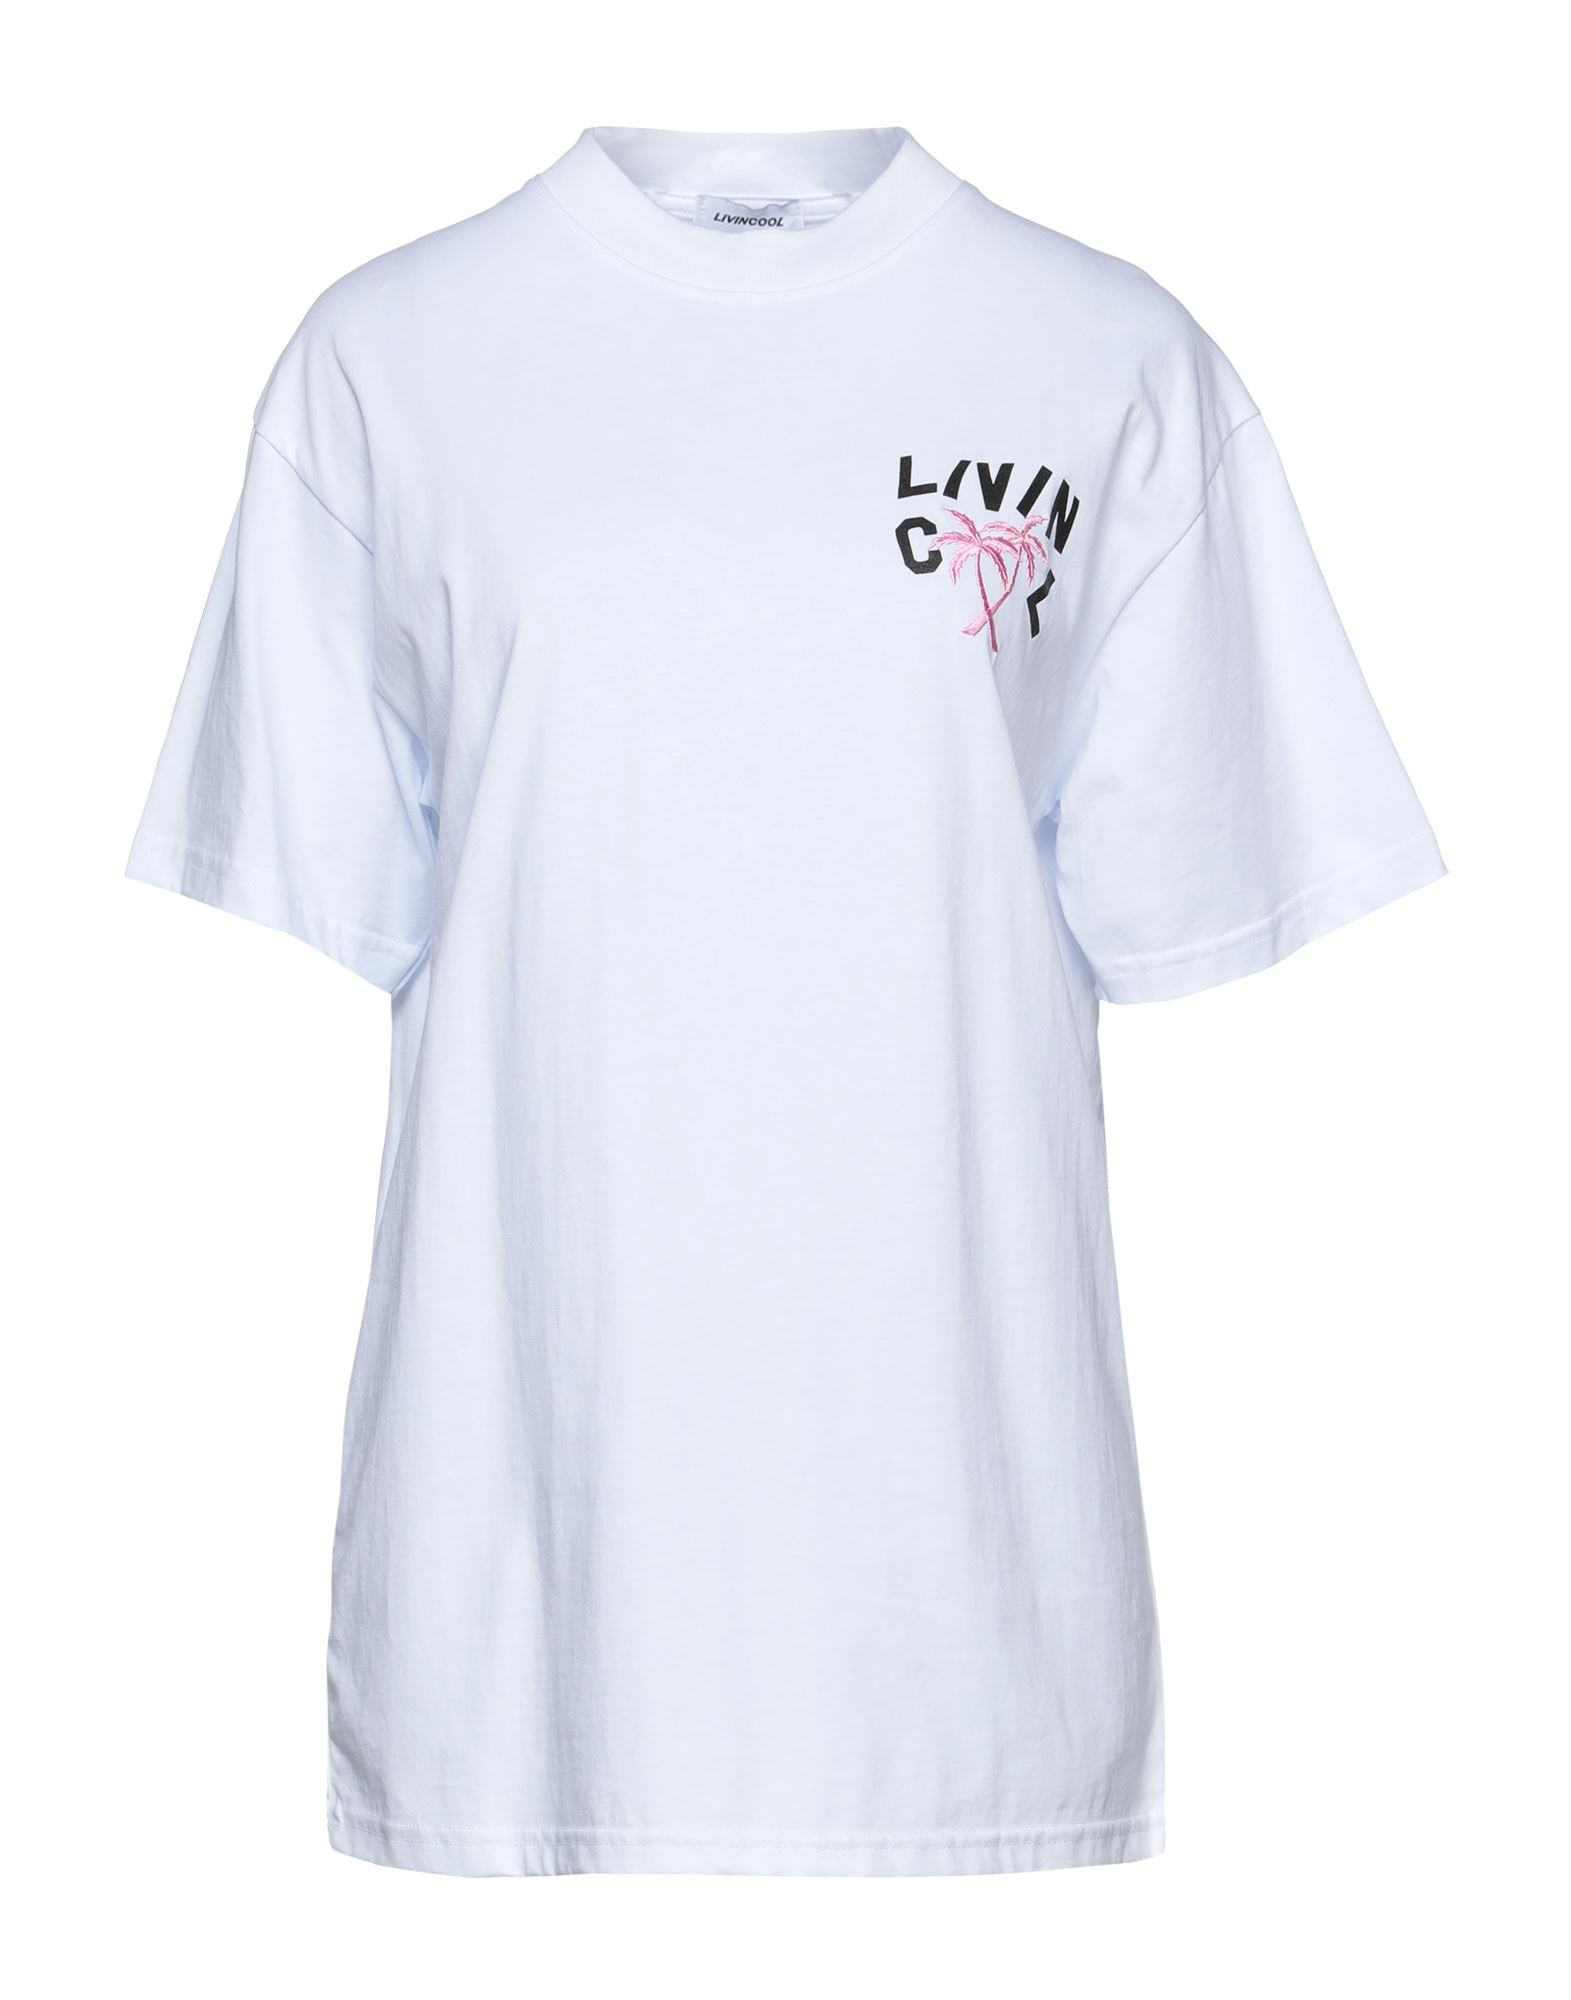 Shop Livincool Woman T-shirt White Size S Cotton